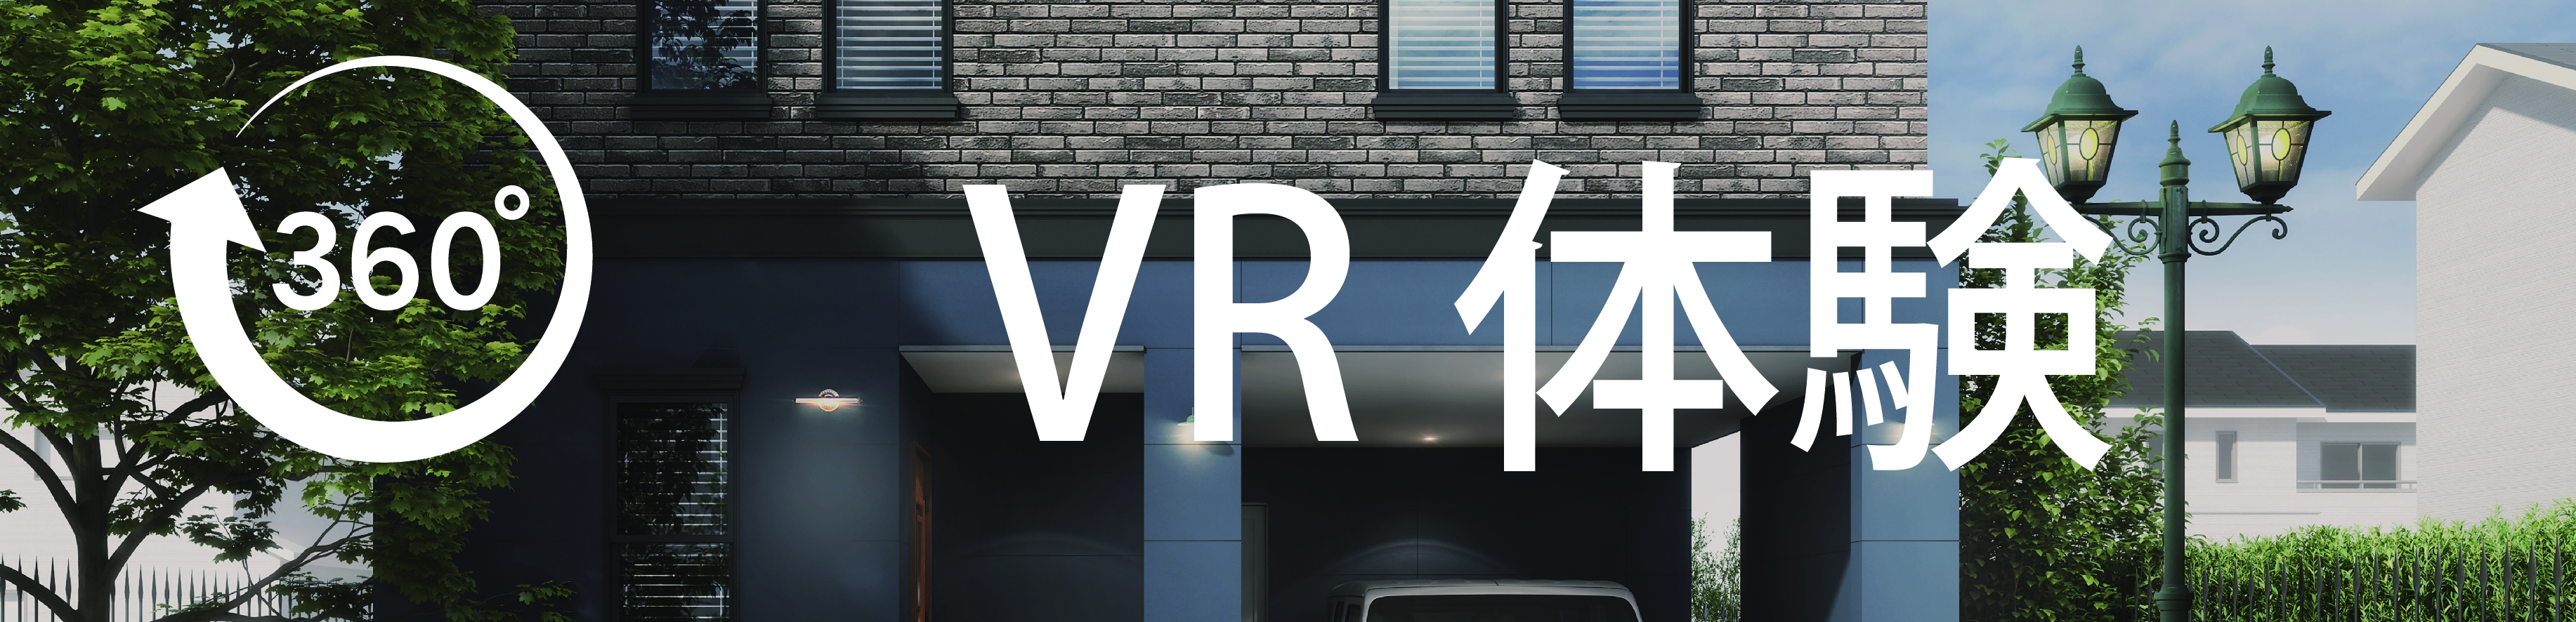 ガレージのある家VR体験.jpg